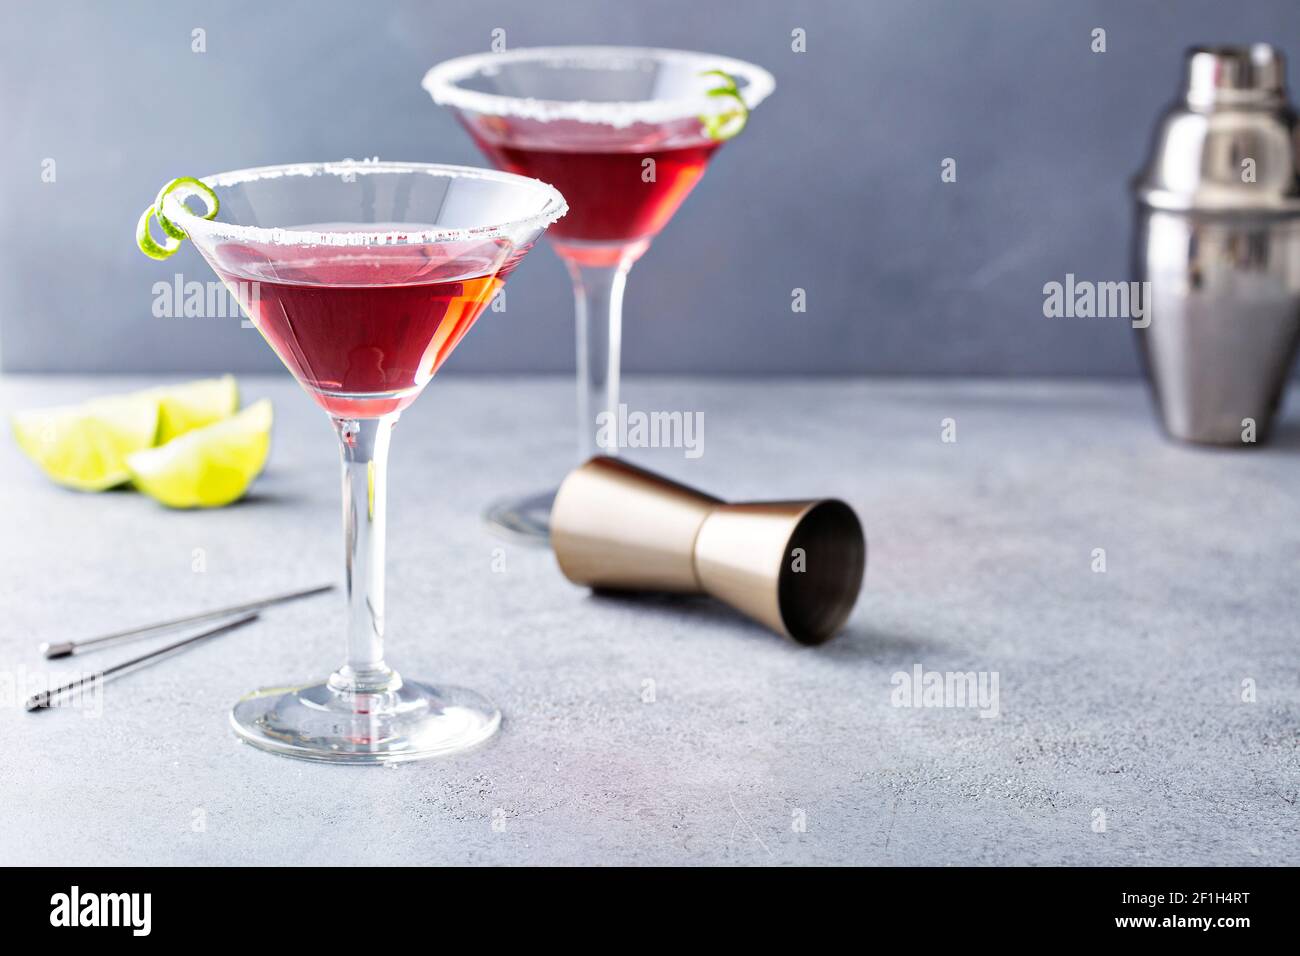 Traditional Cosmopolitan martini with sugar rim Stock Photo